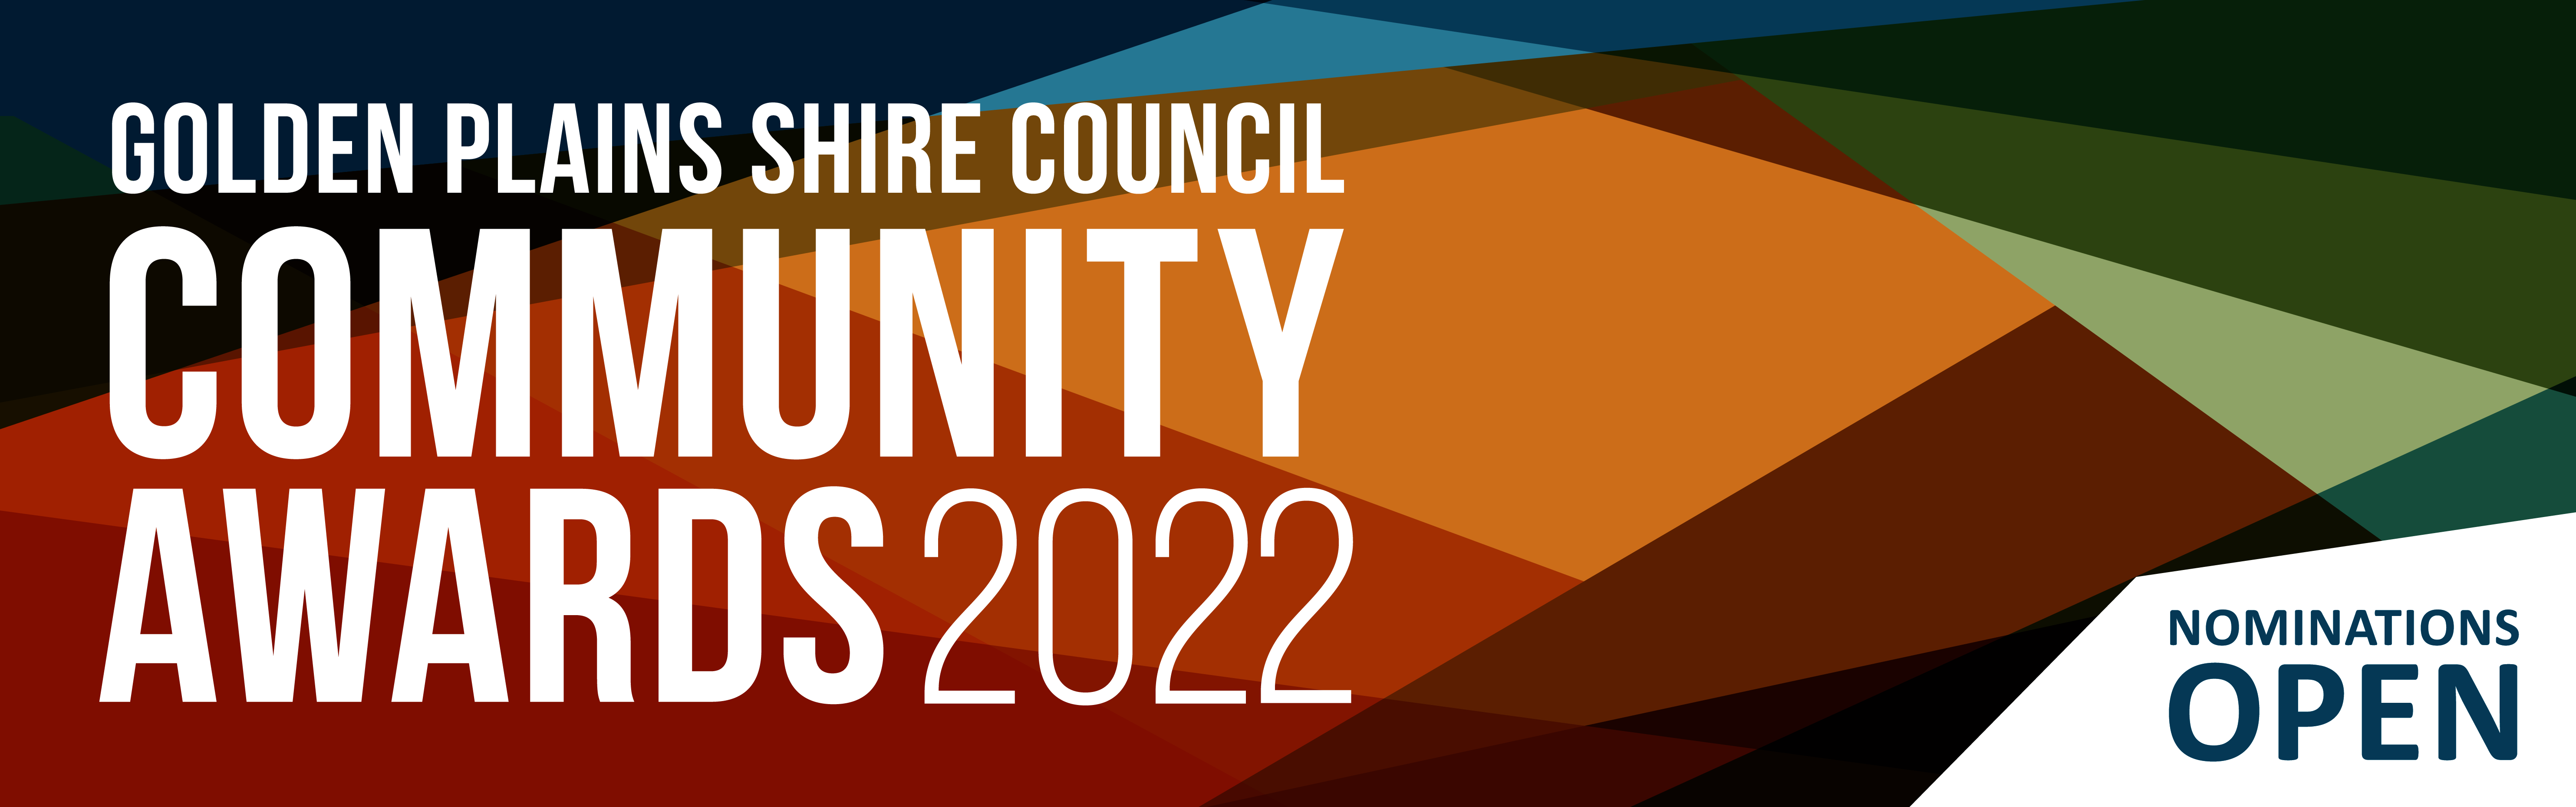 Golden Plains Shire Council Community Awards 2022 Nominations Open